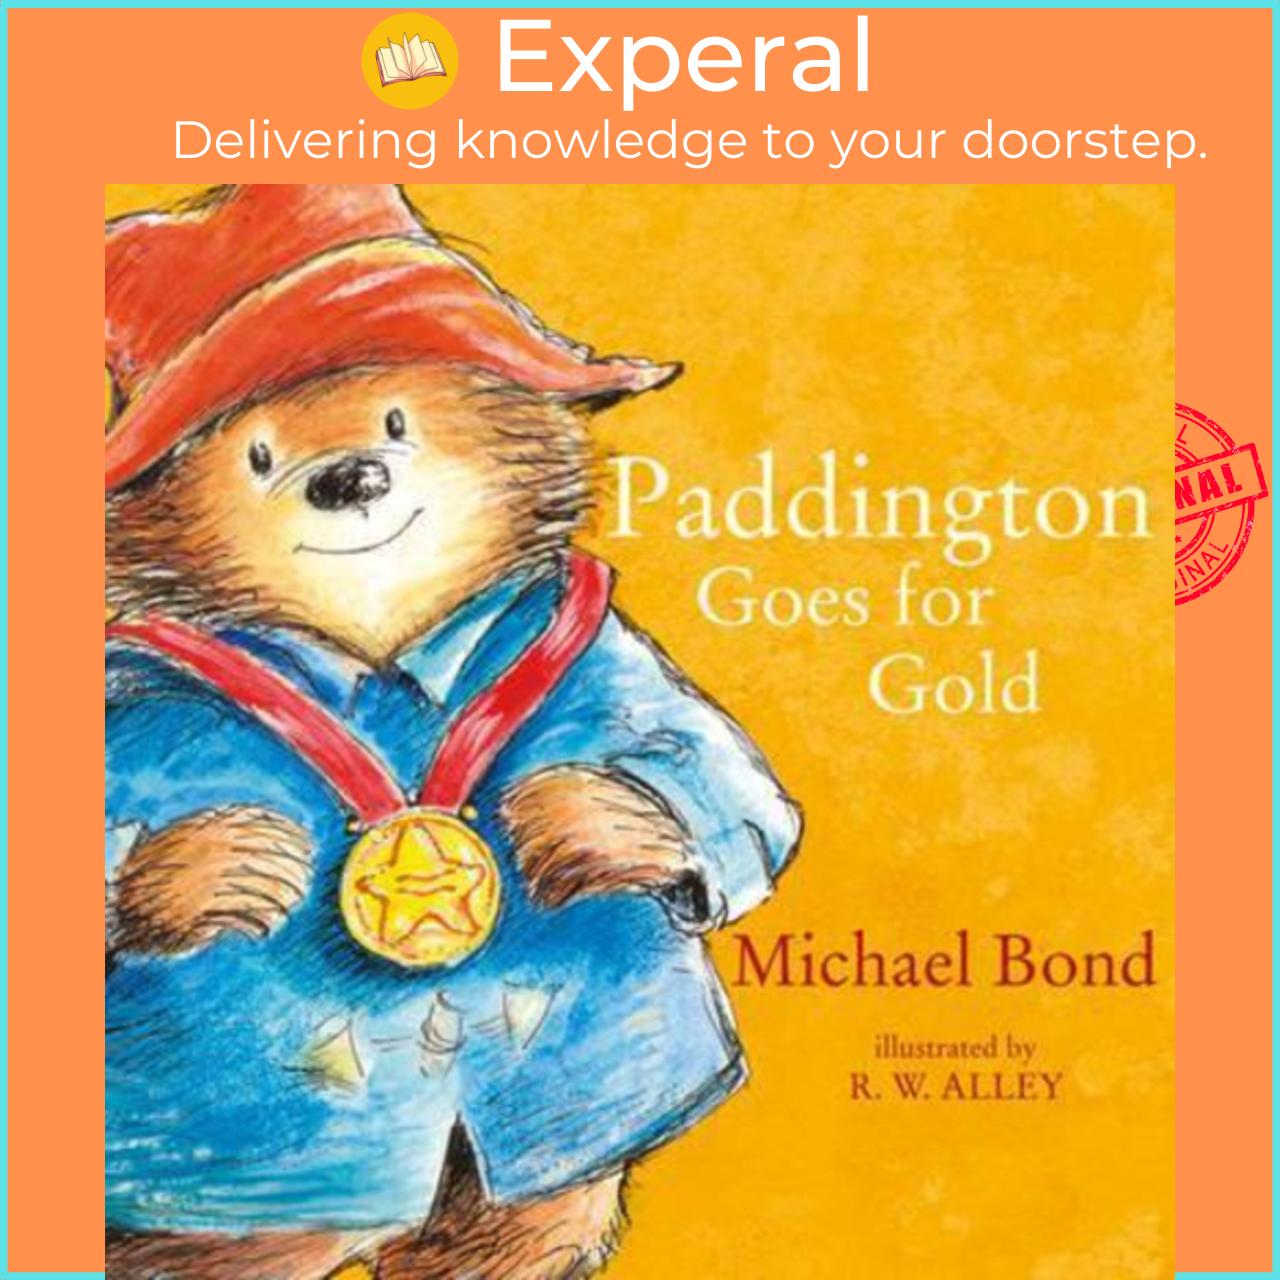 Sách - Paddington Goes for Gold by Michael Bond (UK edition, paperback)